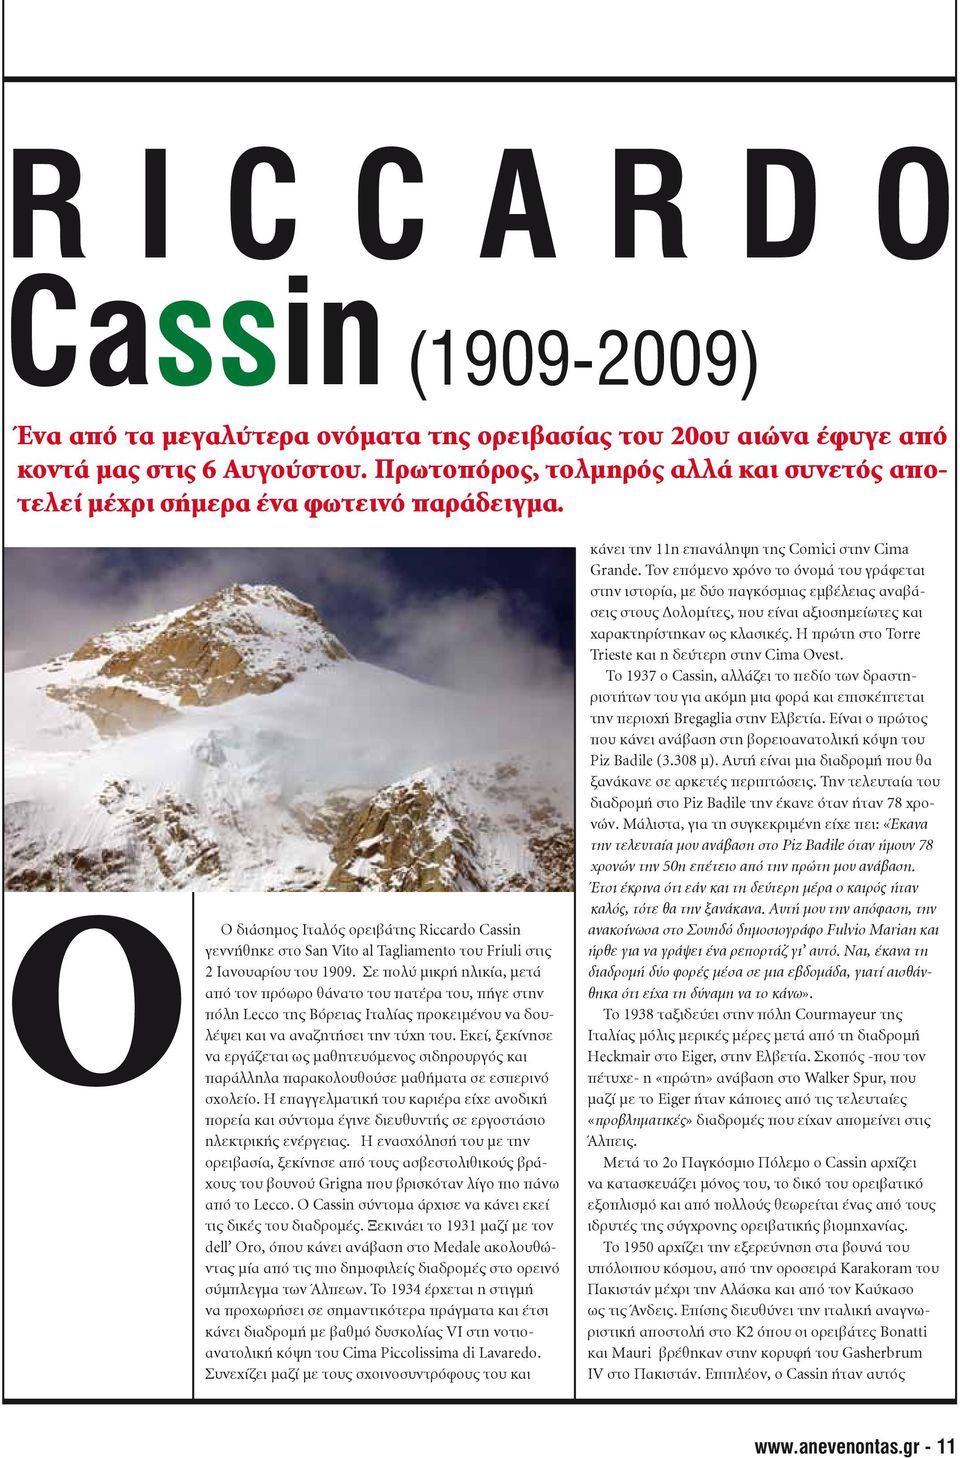 Ο O διάσημος Ιταλός ορειβάτης Riccardo Cassin γεννήθηκε στο San Vito al Tagliamento του Friuli στις 2 Ιανουαρίου του 1909.